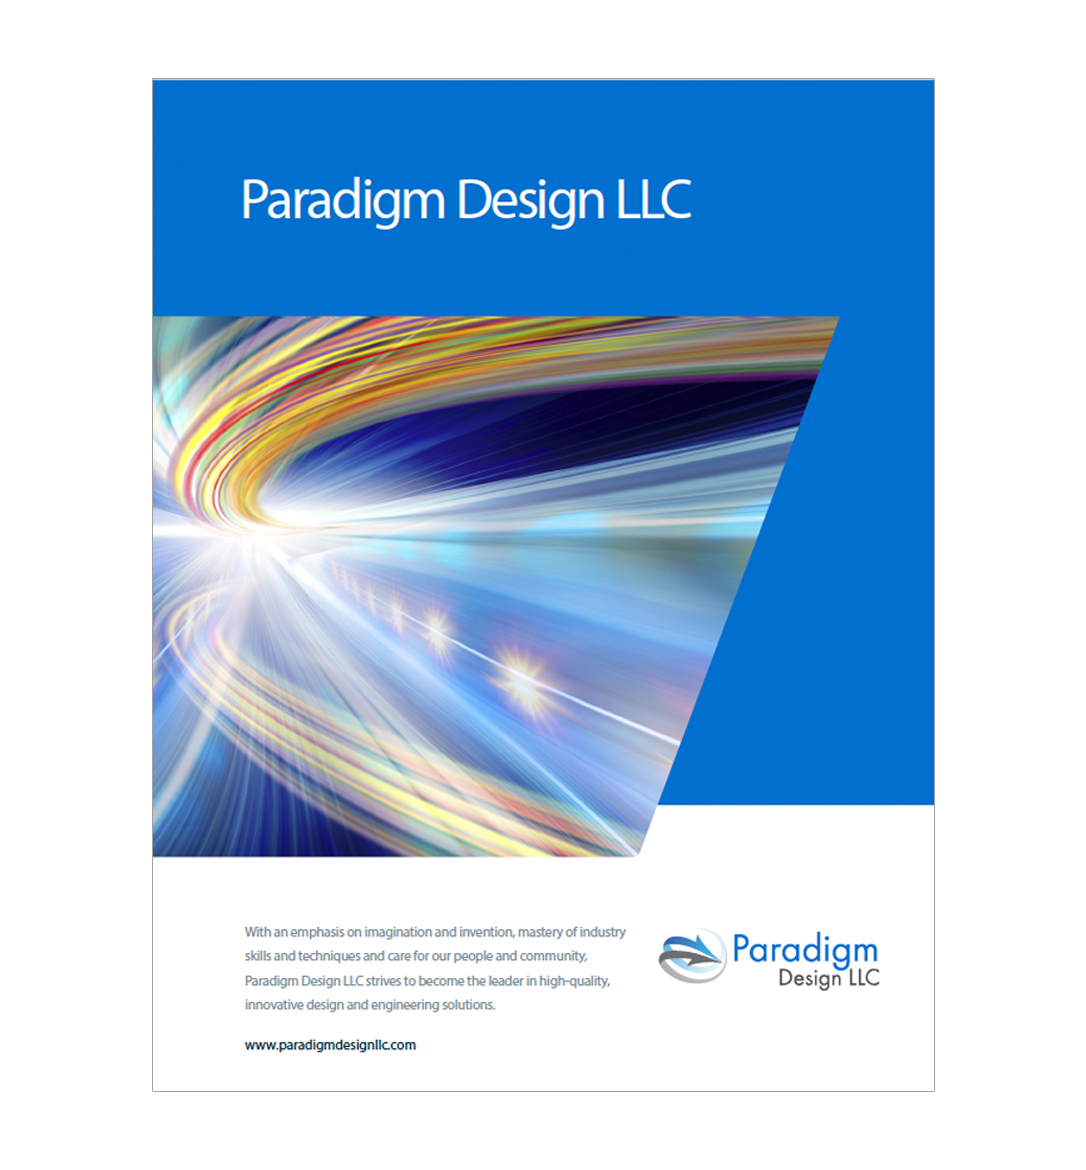 Paradigm Design LLC